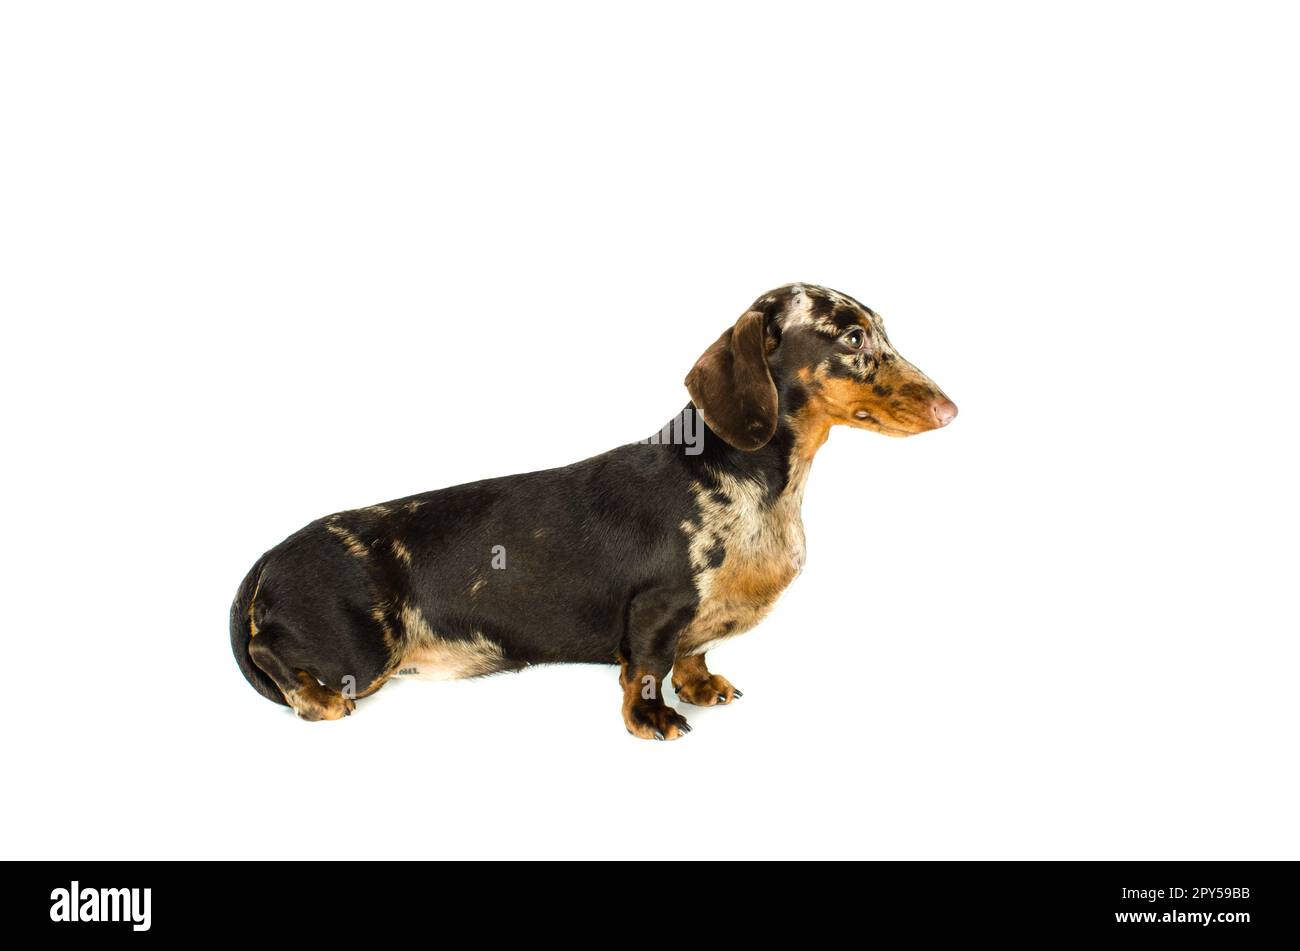 Dachshund Dog in marmo corto, cane da caccia, isolato su sfondo bianco Foto Stock